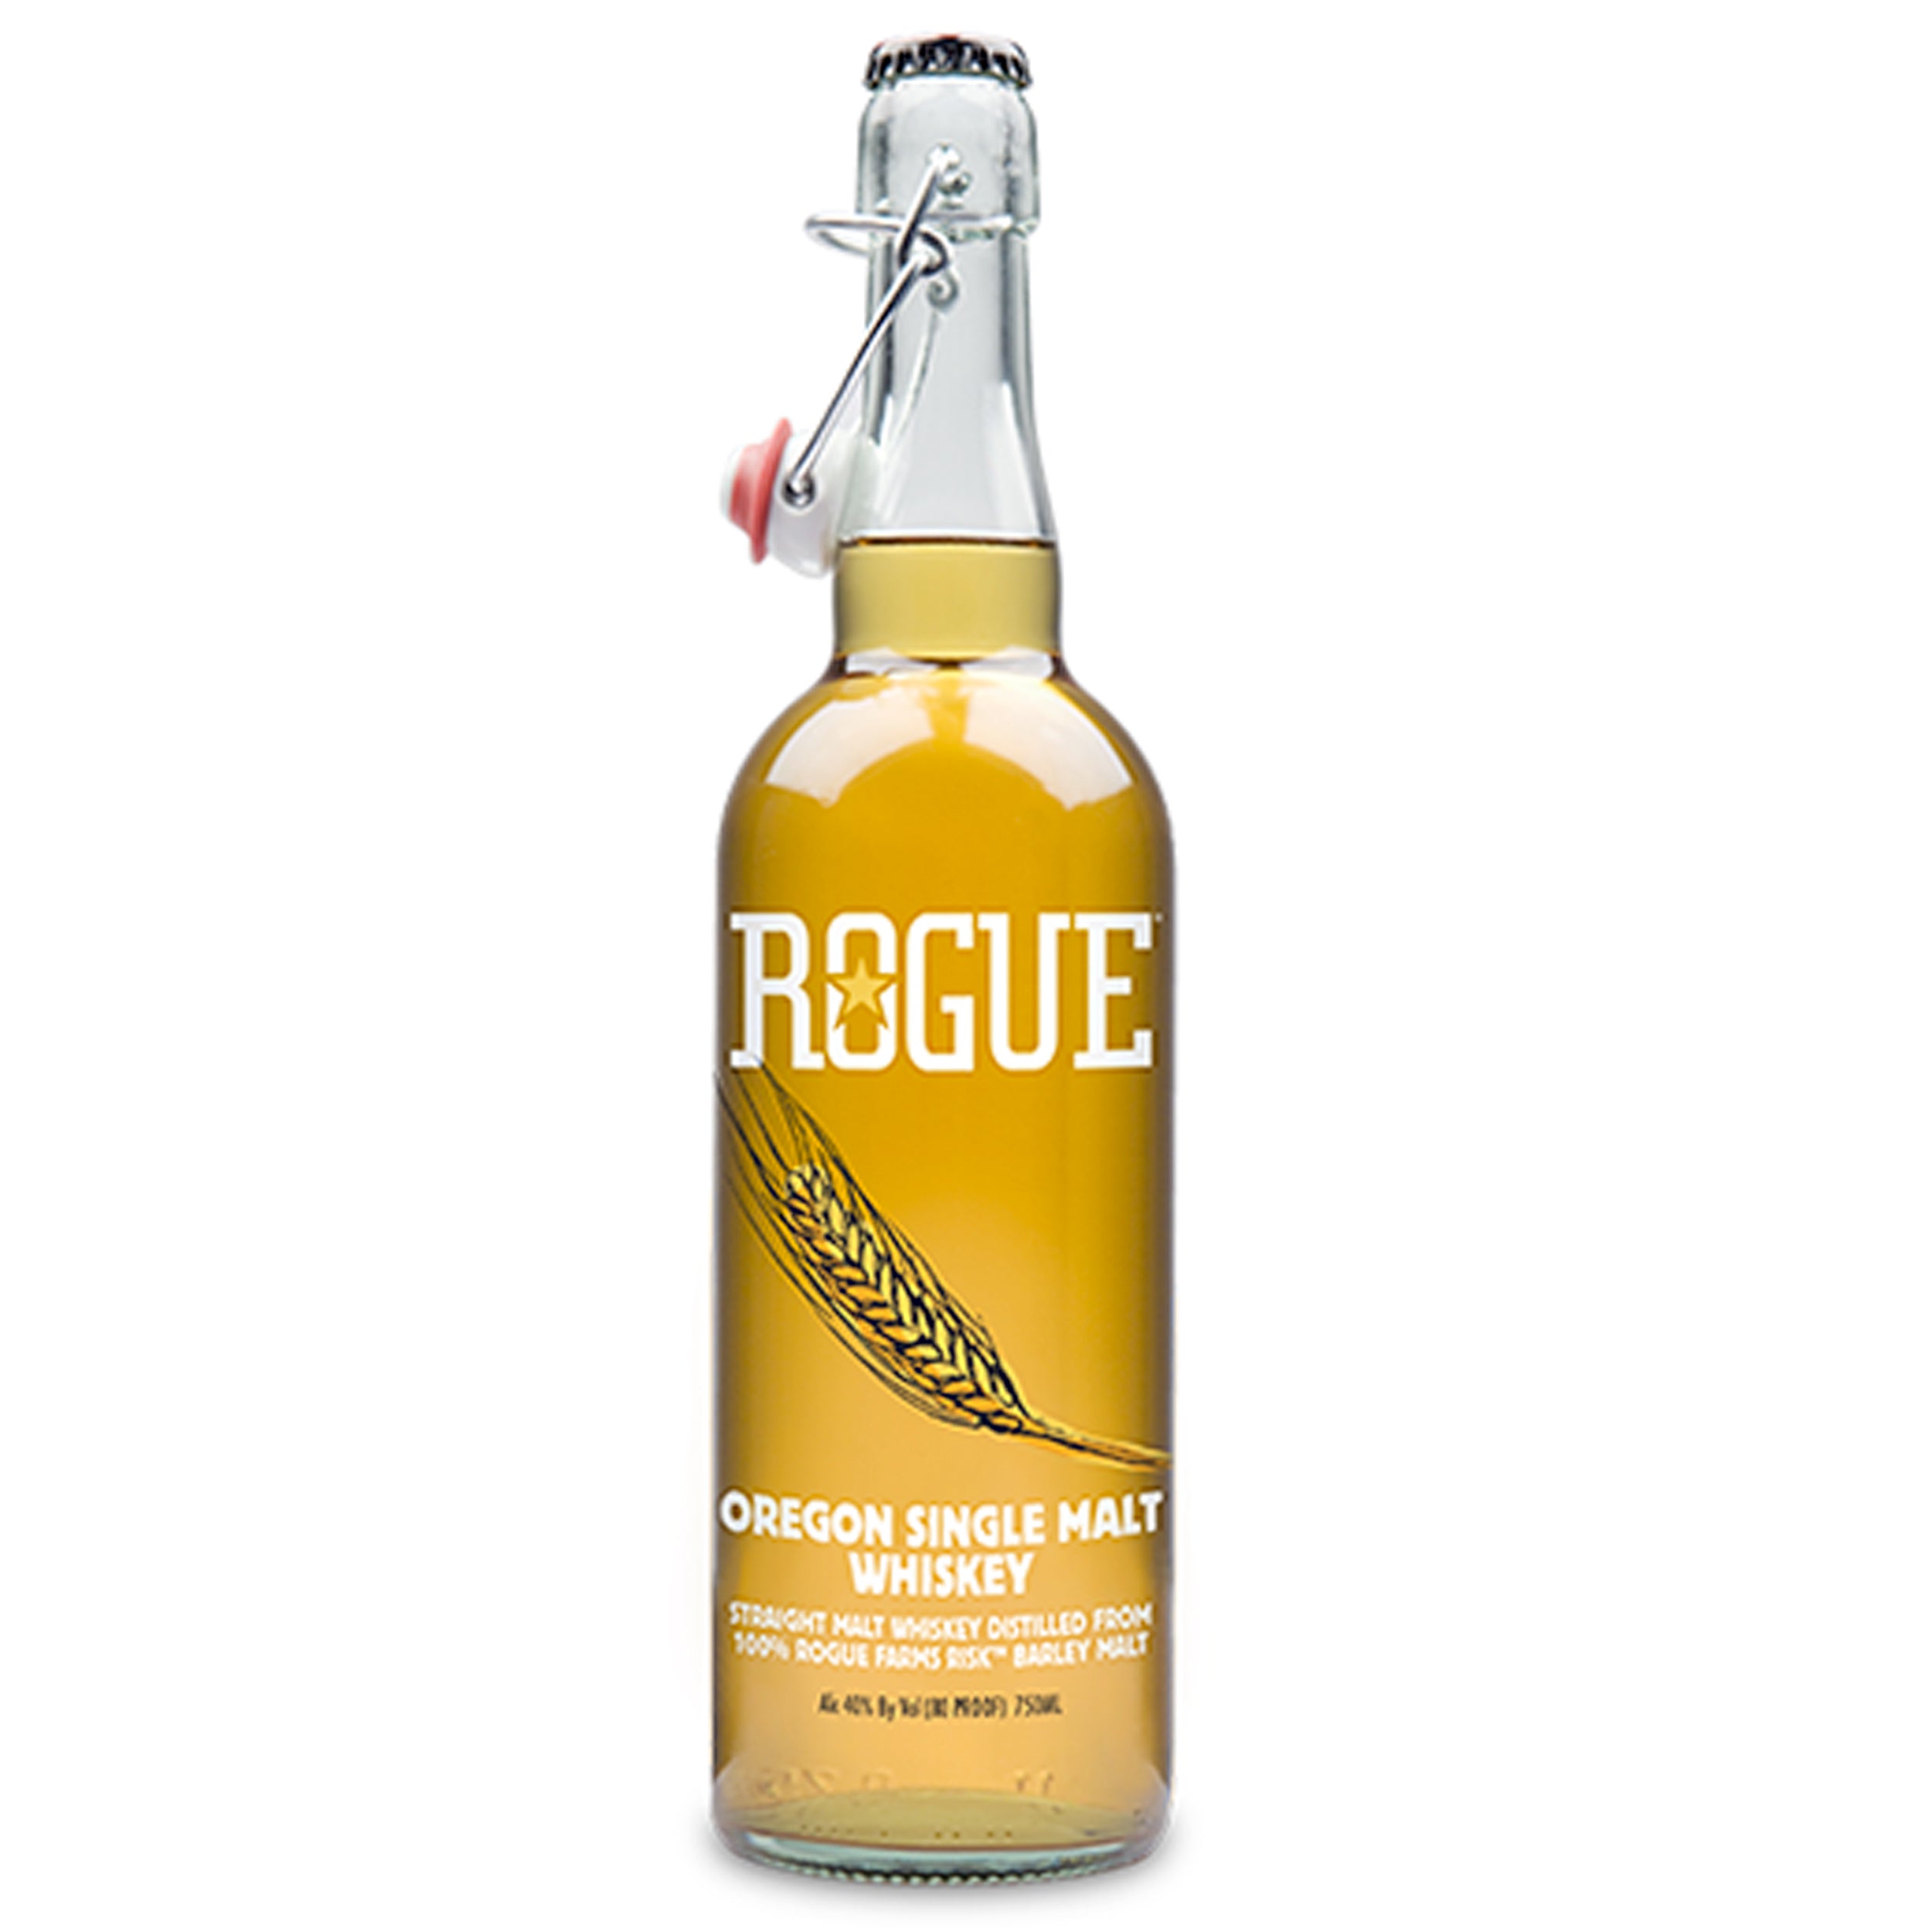 Rogue Single Malt Oregon Whiskey